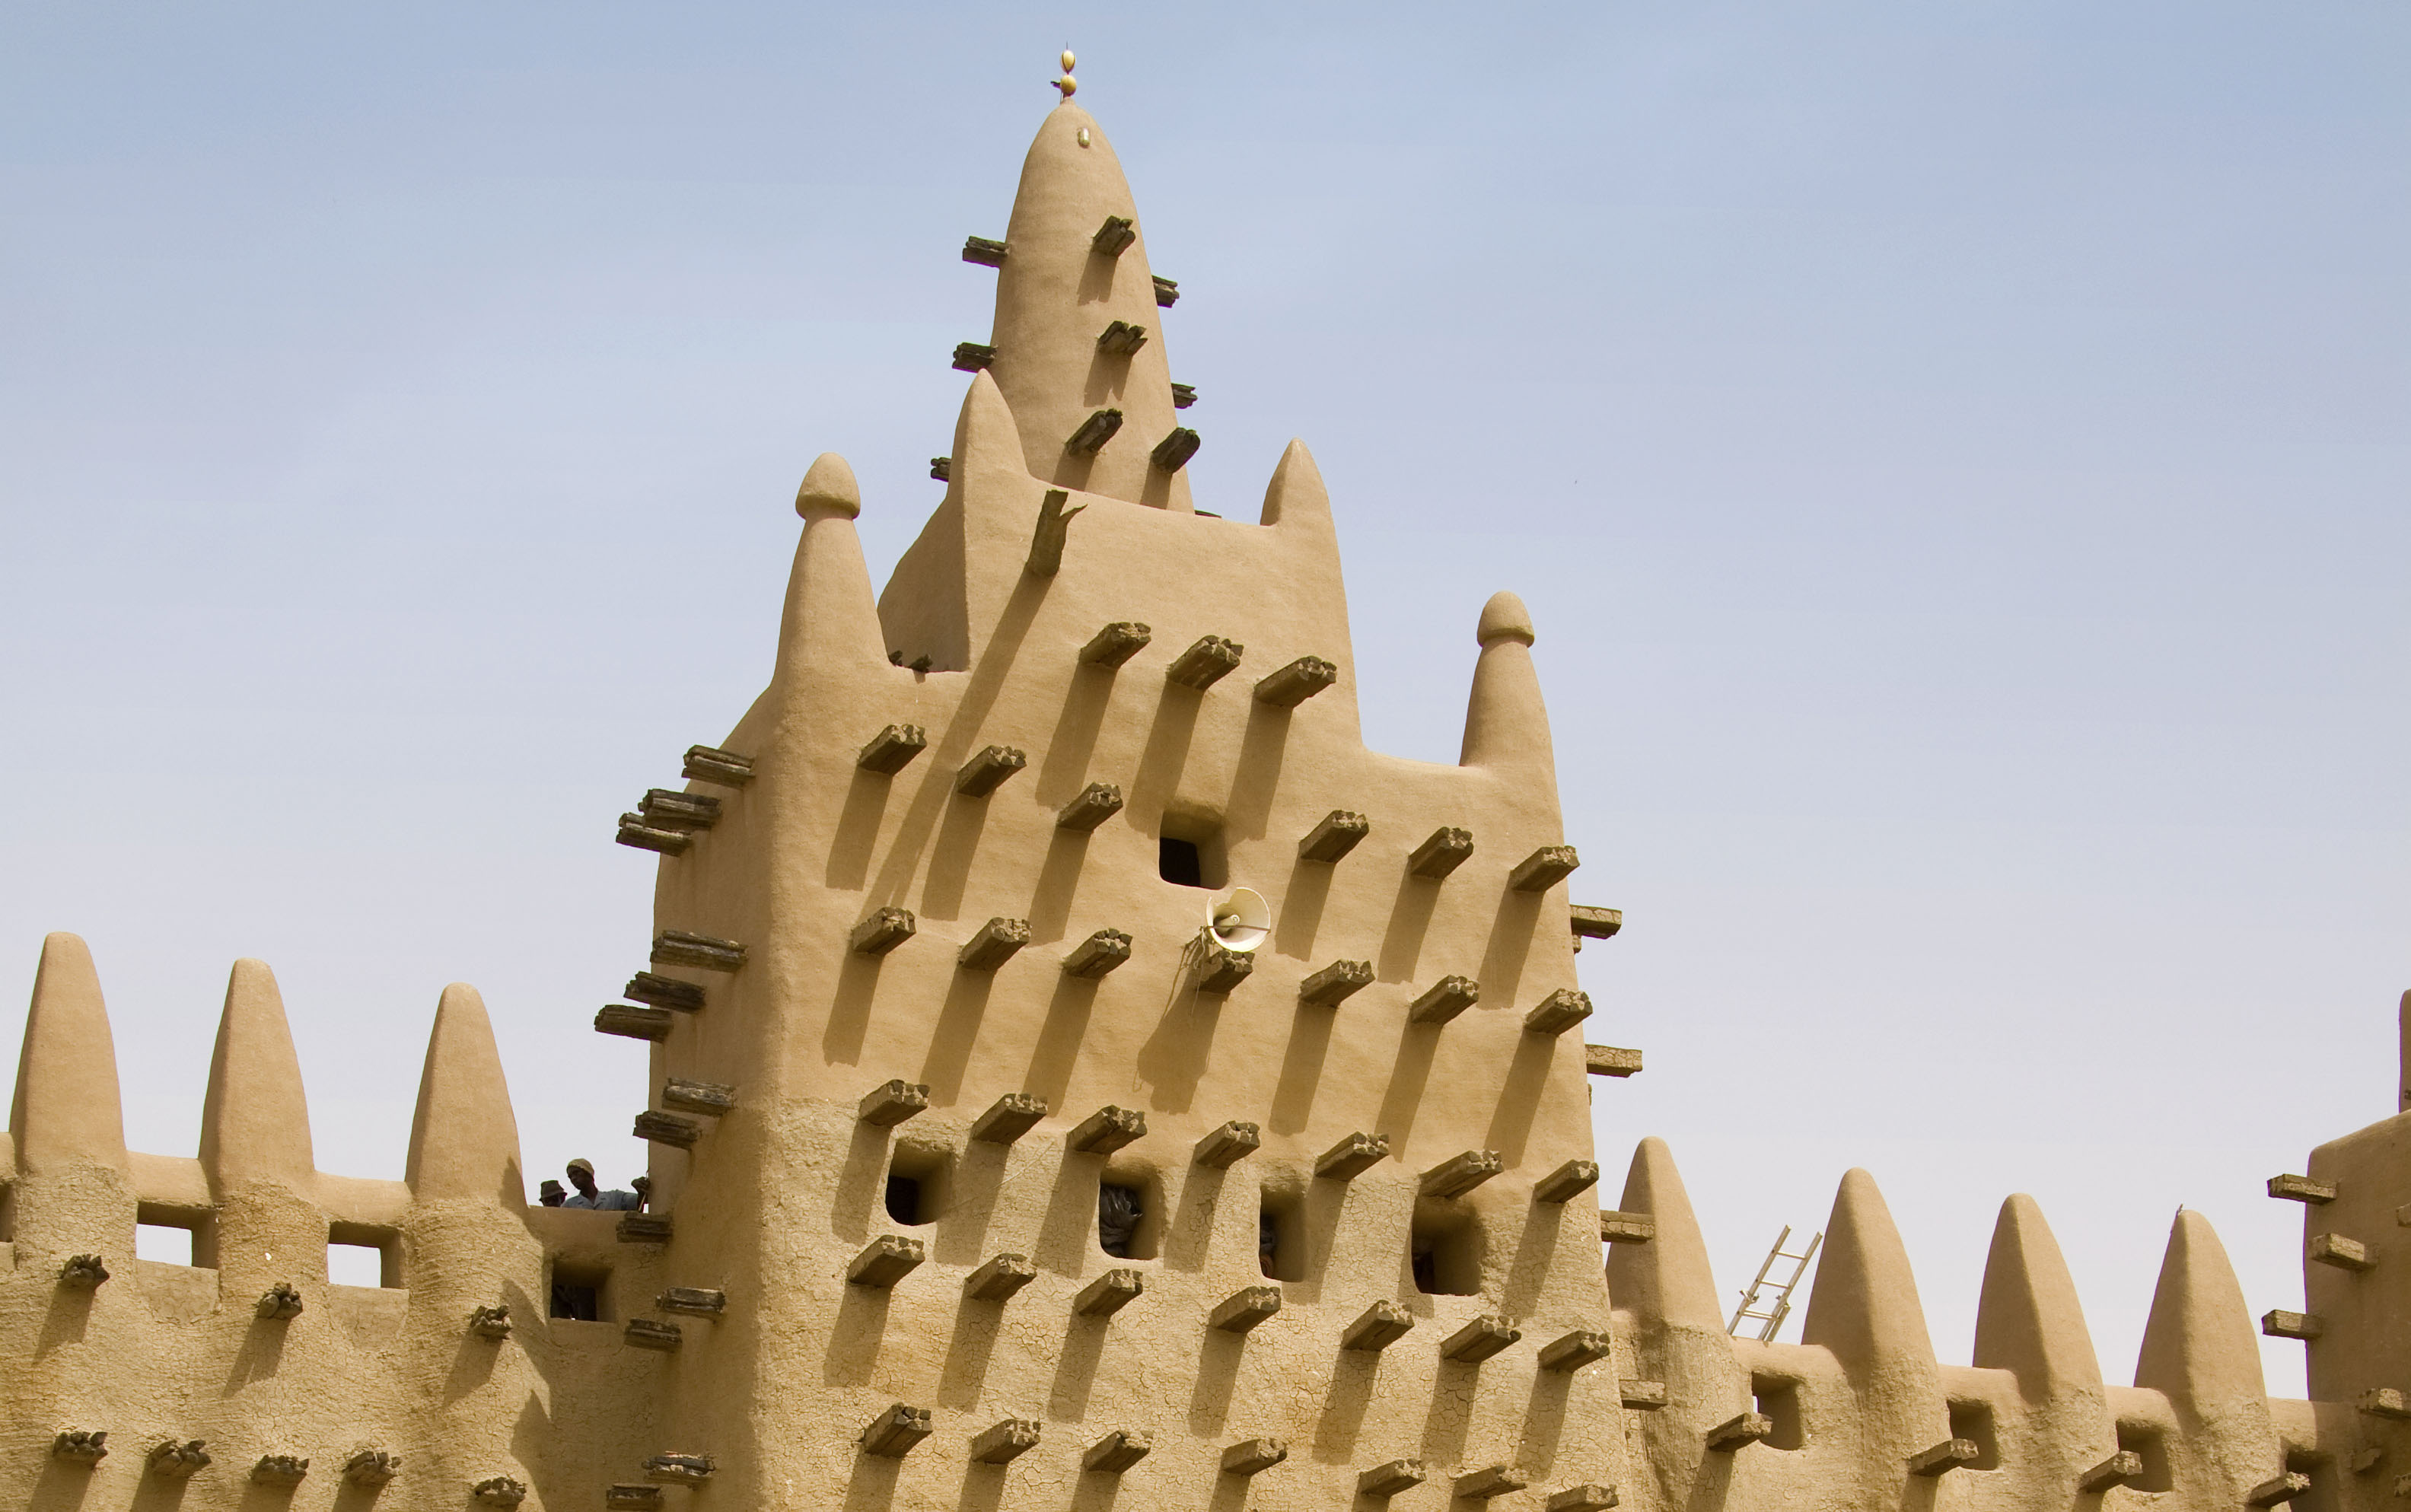 Minaret de la Mosquée de Djenné, Mali - crédit Donhype